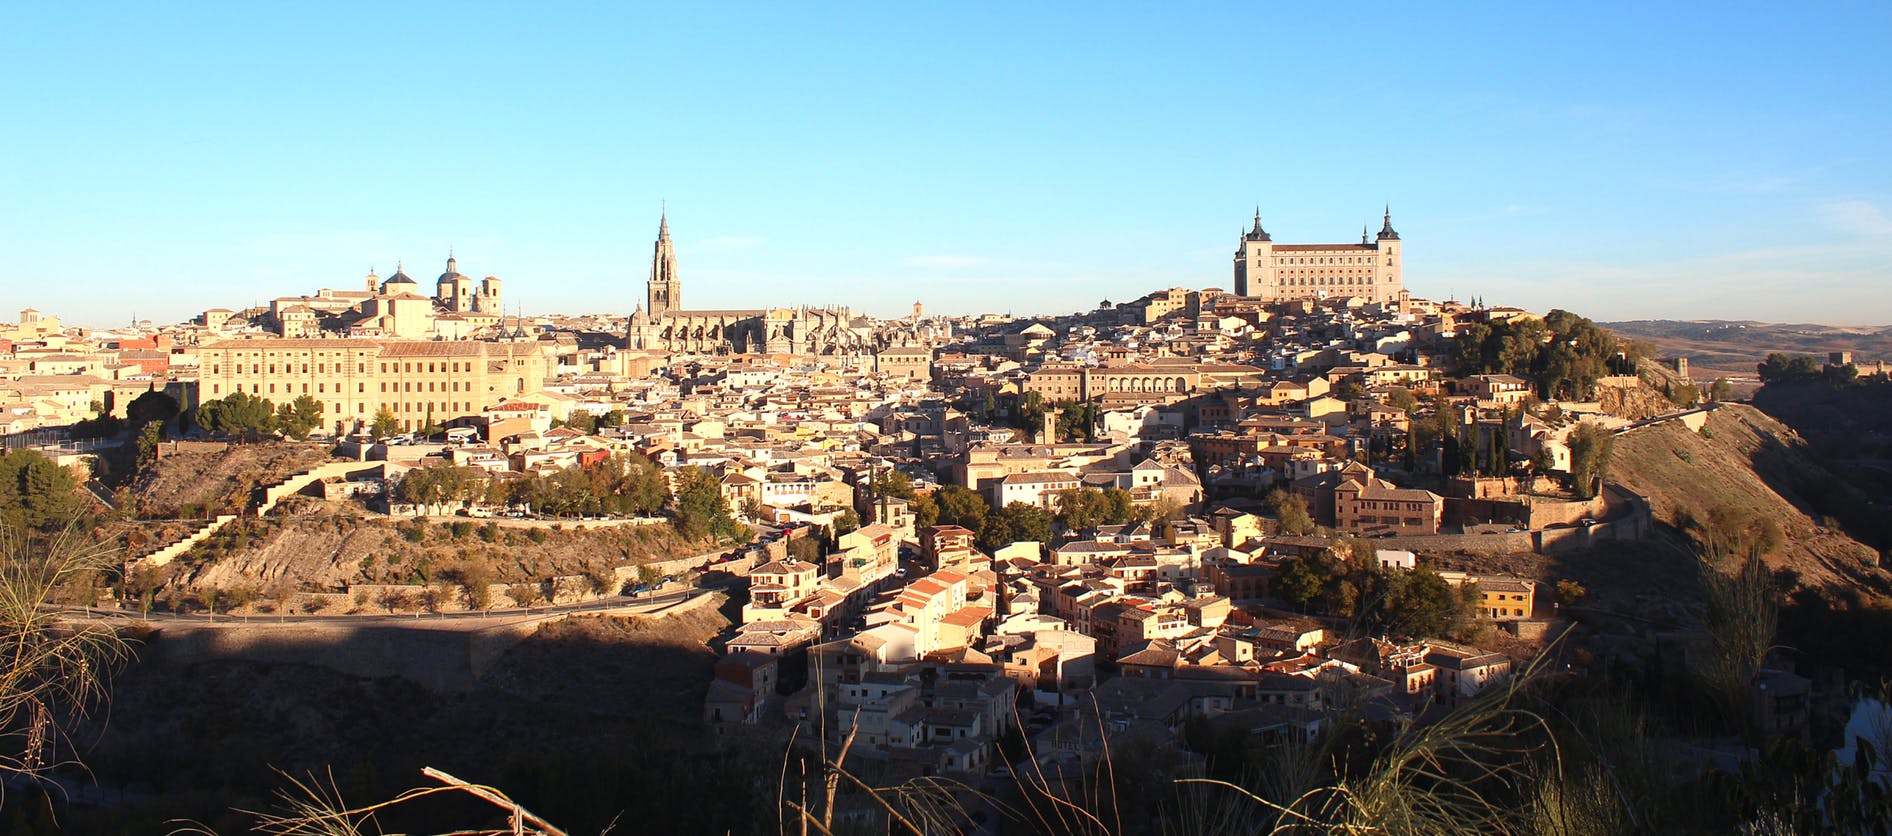 Excursión guiada a Toledo desde Madrid con visita a una bodega local